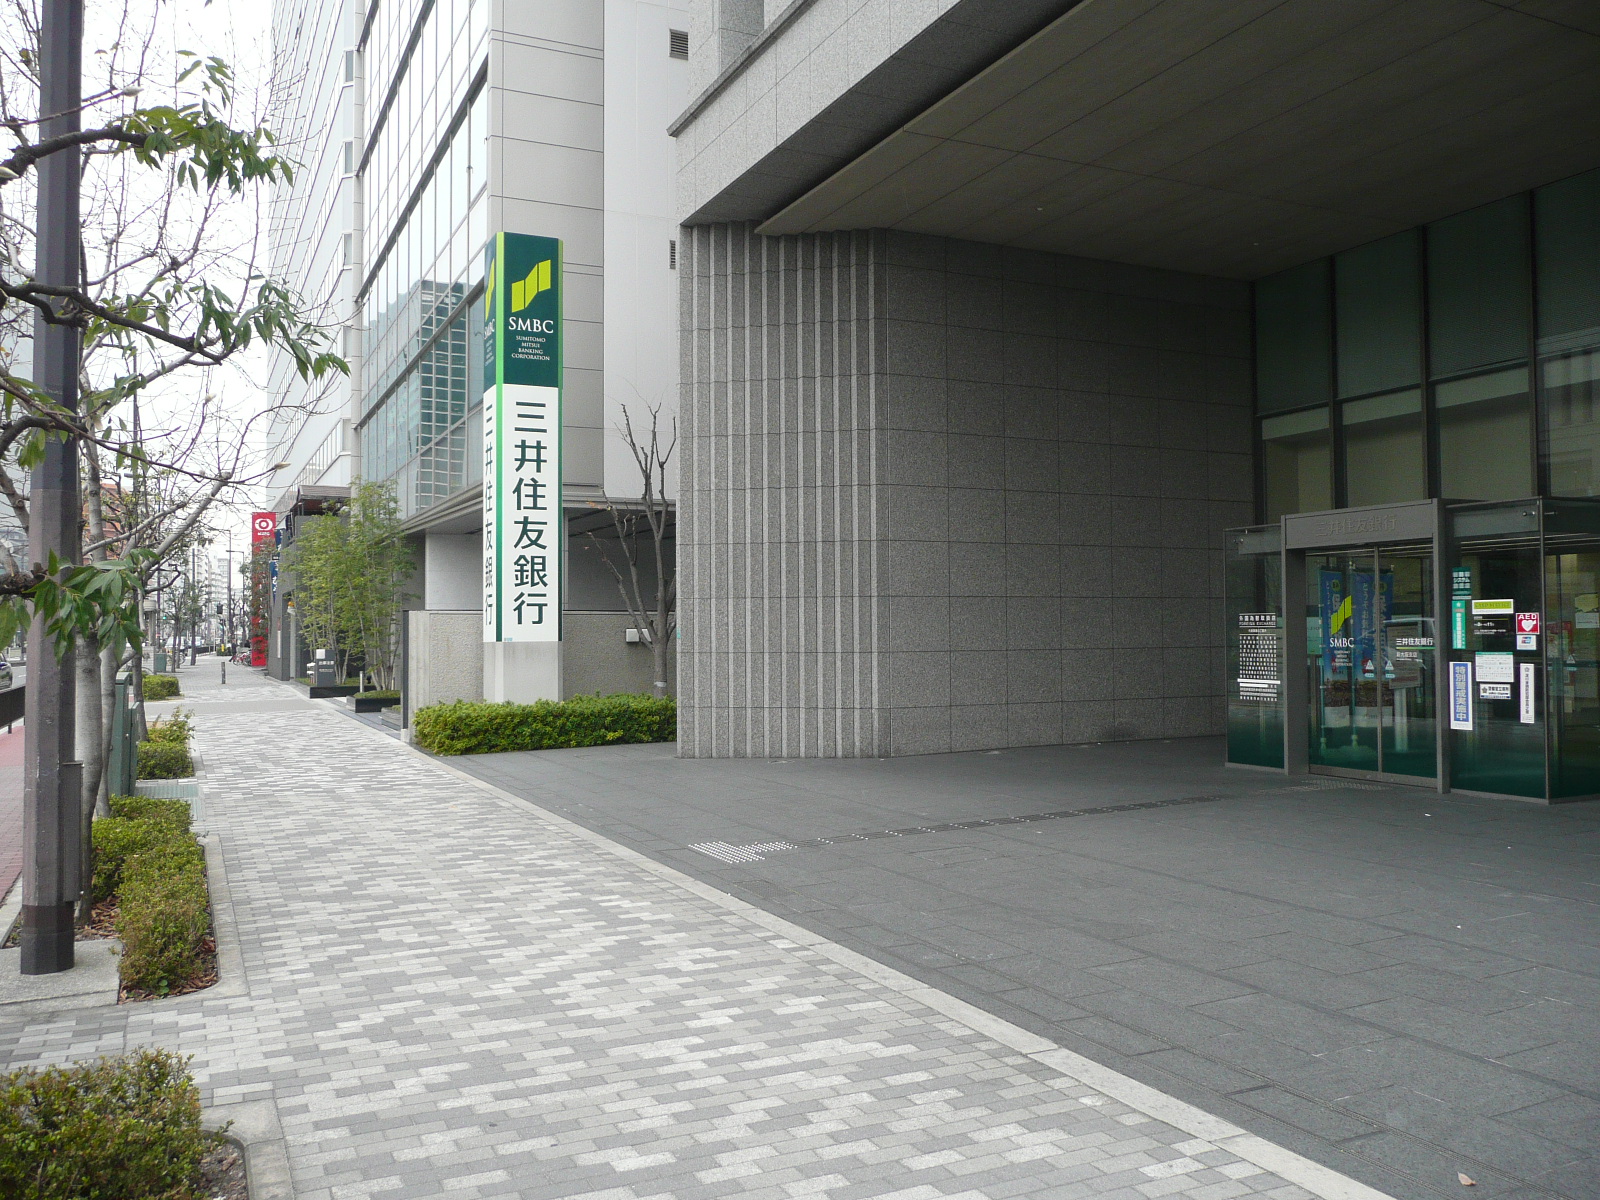 Bank. 462m to Sumitomo Mitsui Banking Corporation Osaka Branch (Bank)